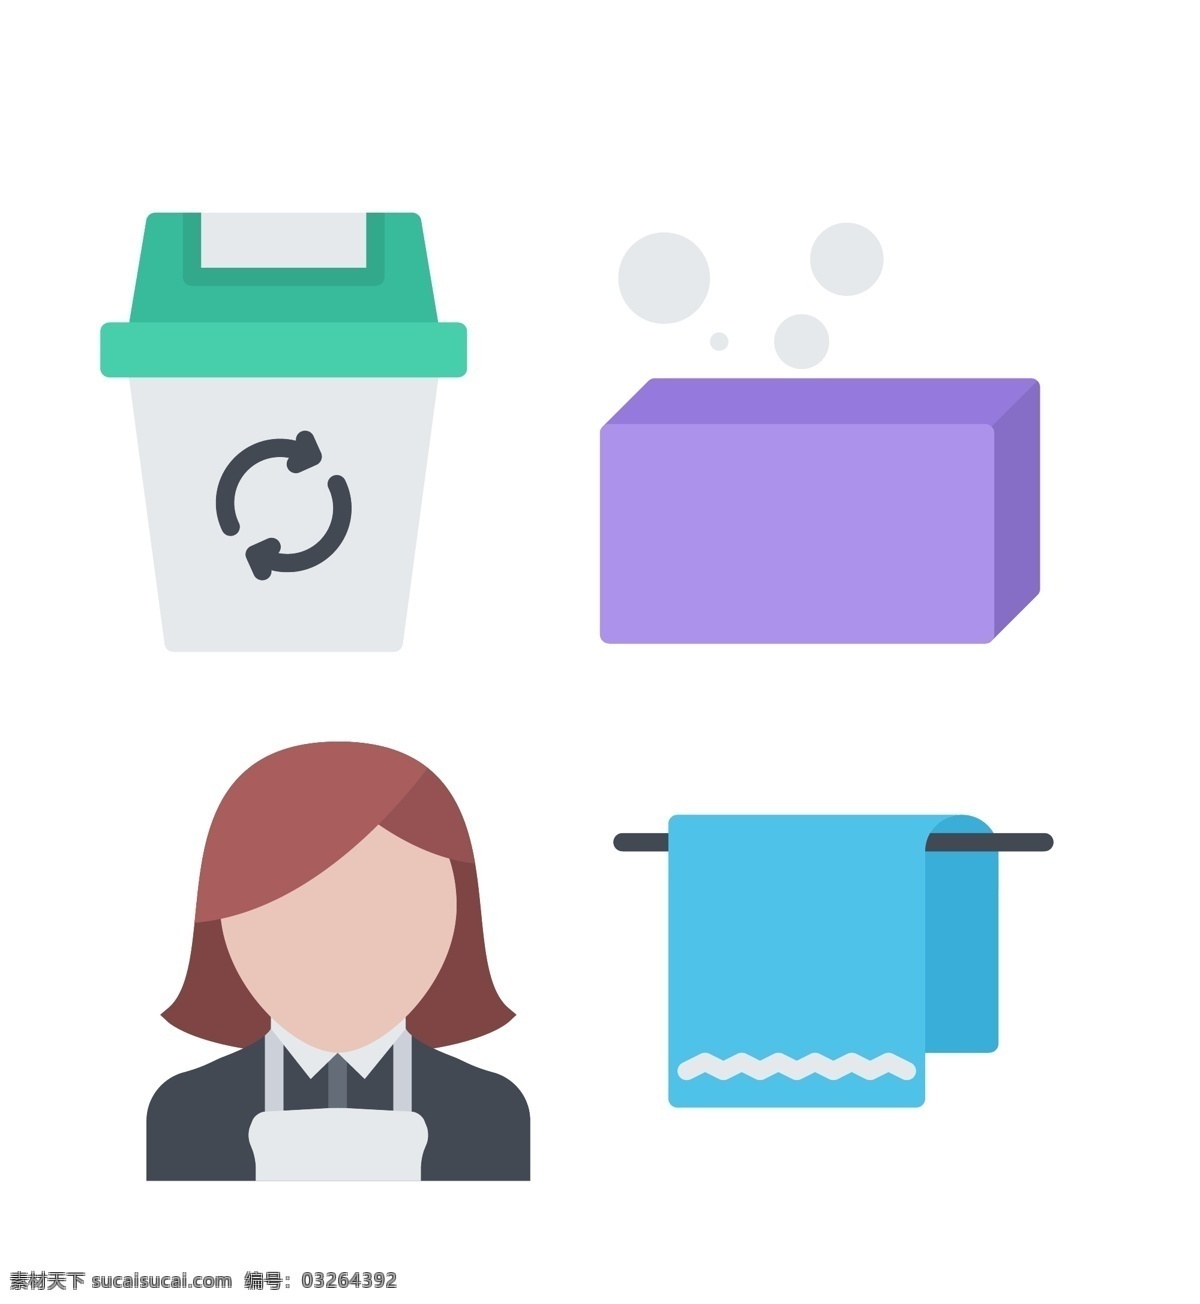 职业 icon 图标 职业icon 表情图标 创意图标 垃圾桶 服务员 毛巾 图标下载 网页图标 图标设计